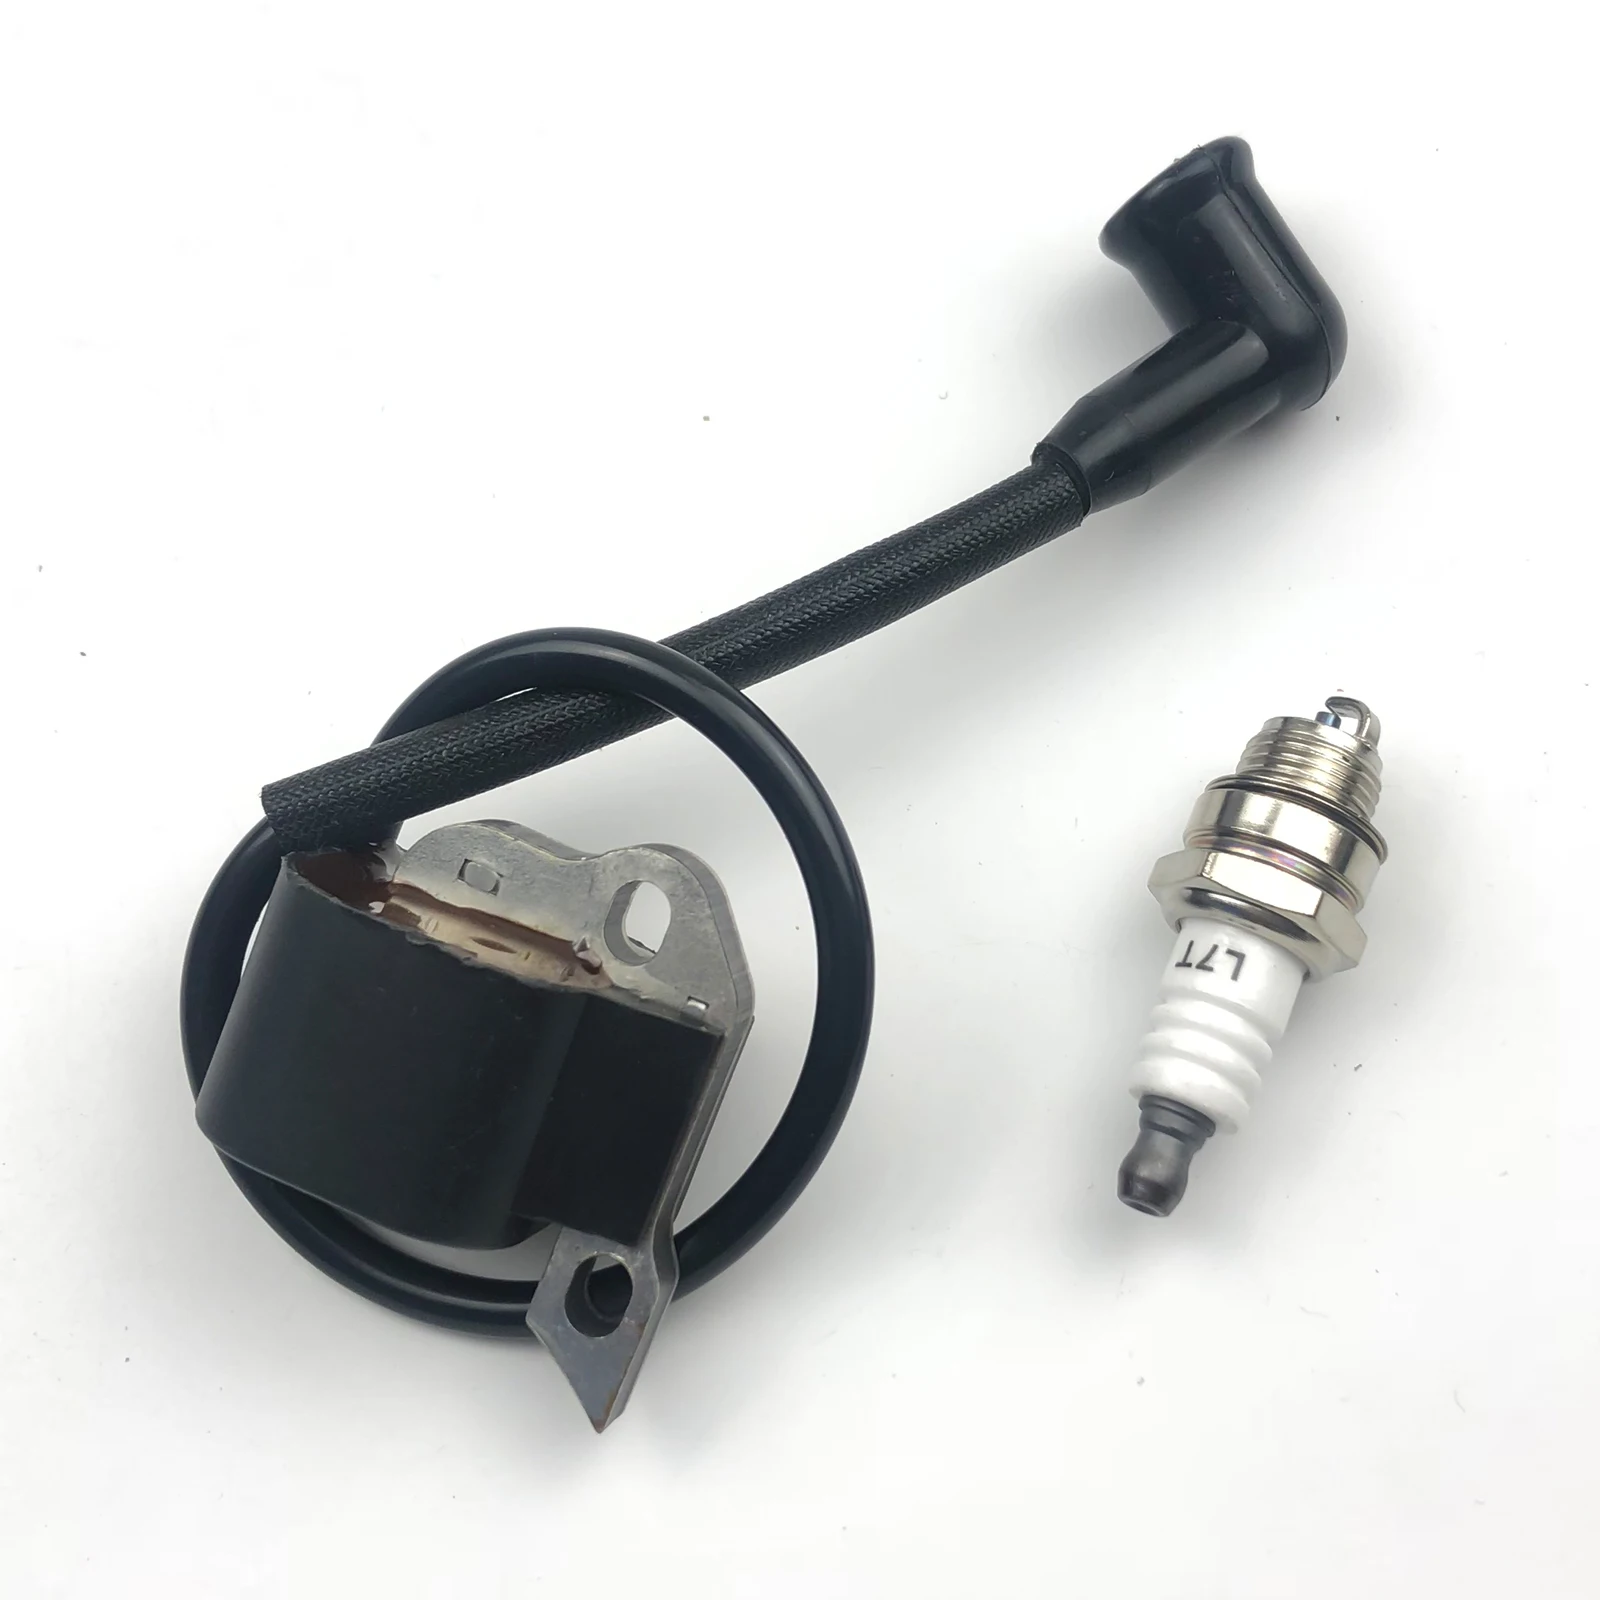 

2pcs/1set Ignition Coil + Spark Plug fit for Stihl BR320 BR340 BR380 BR400 BR420 SR420 Backpack Blower 4203-400-1301 Replace